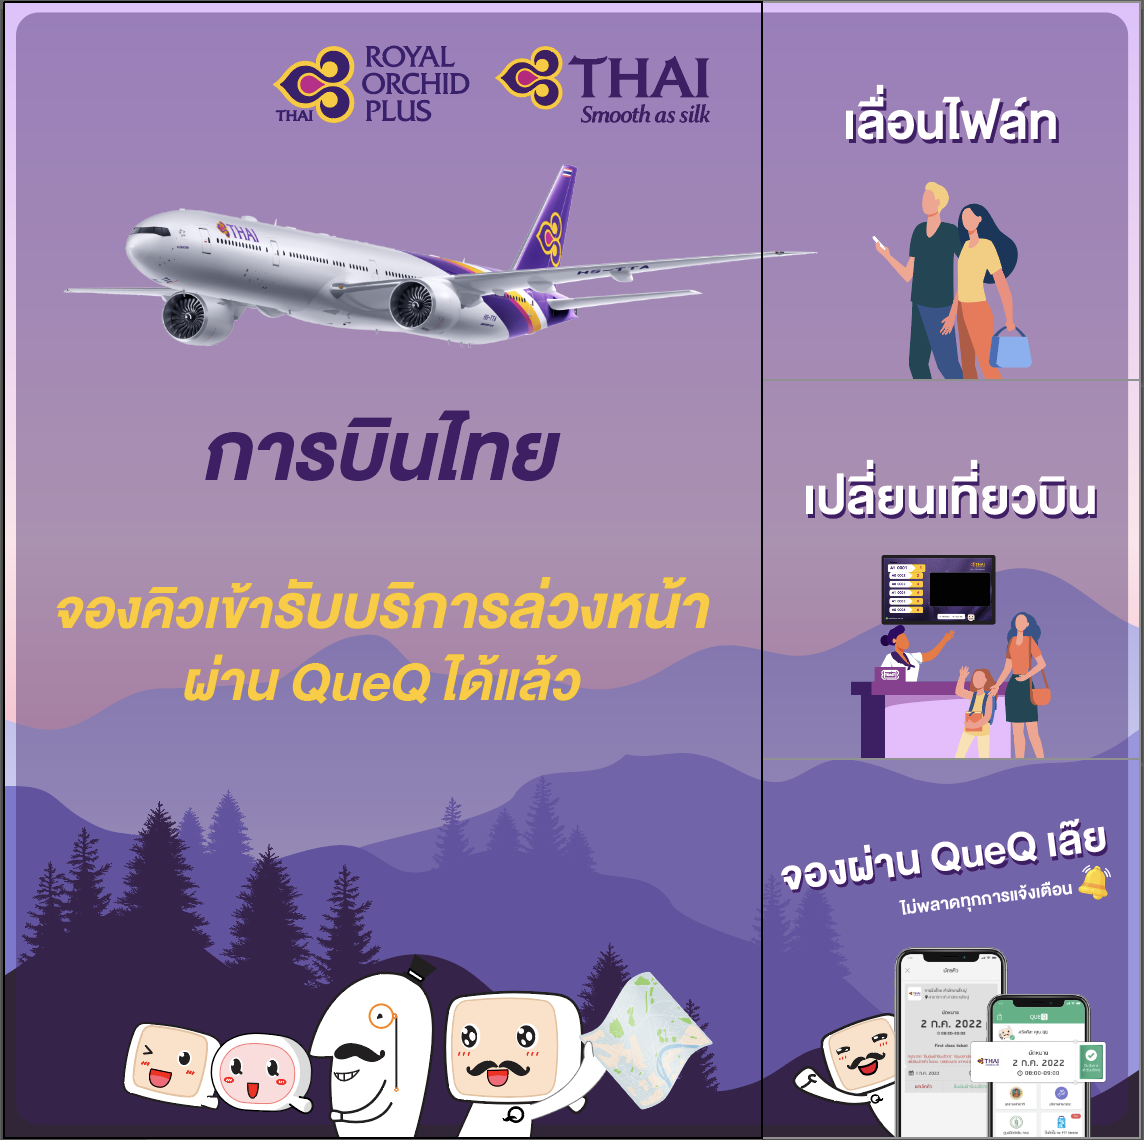 การบินไทยอำนวยความสะดวกผู้โดยสาร สามารถจองคิวใช้บริการสำนักงานบัตรโดยสารผ่าน QueQ บนโทรศัพท์มือถือ